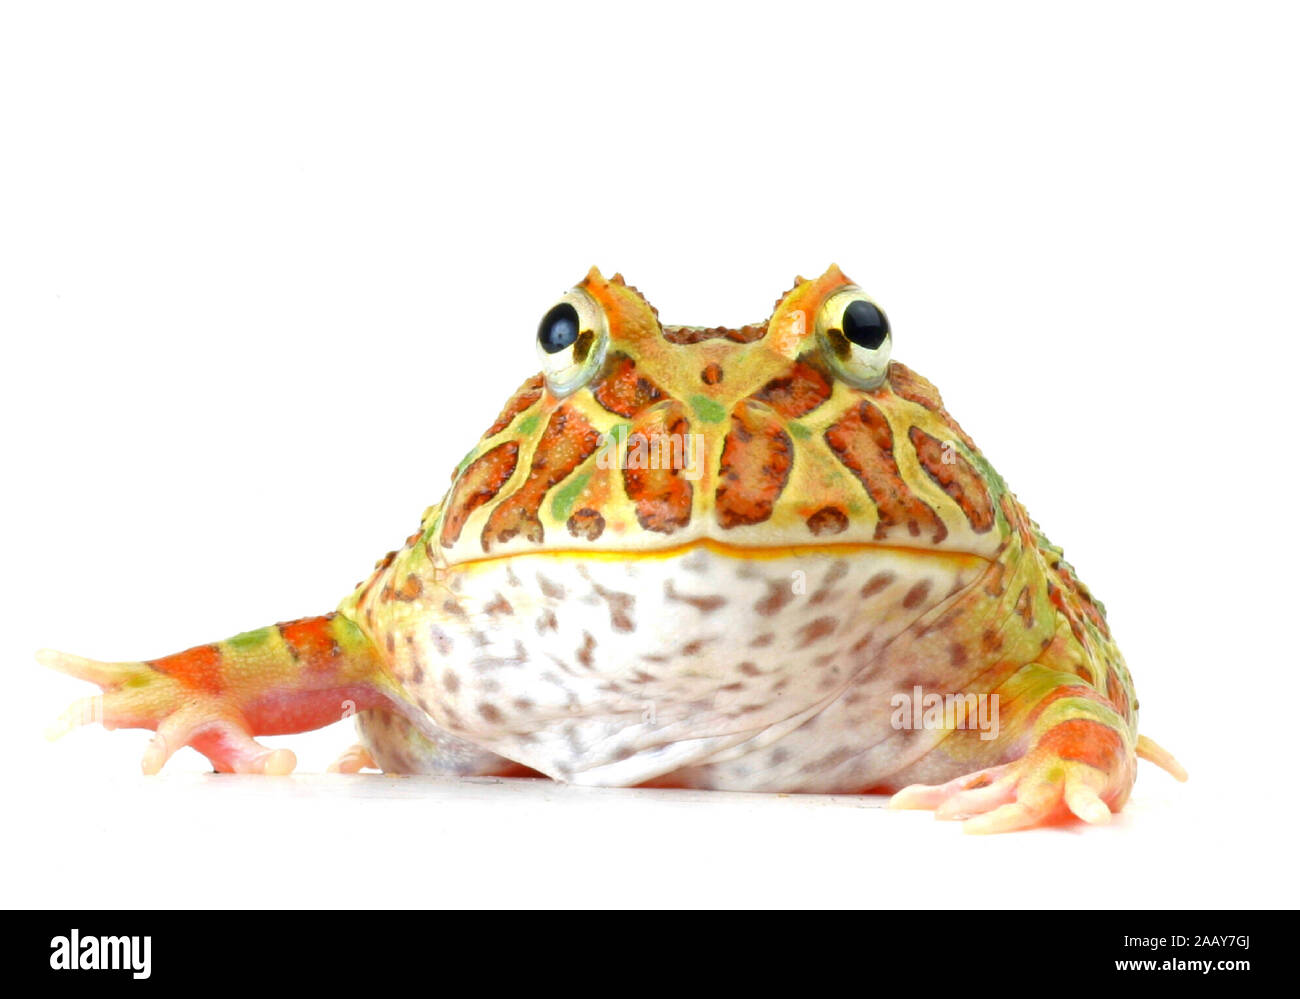 Schmuckhornfrosch (Ceratophrys ornata), Portraet, Freisteller. | argentine horned frog, pacman frog  (Ceratophrys ornata), portrait, cutted out. | BLW Stock Photo